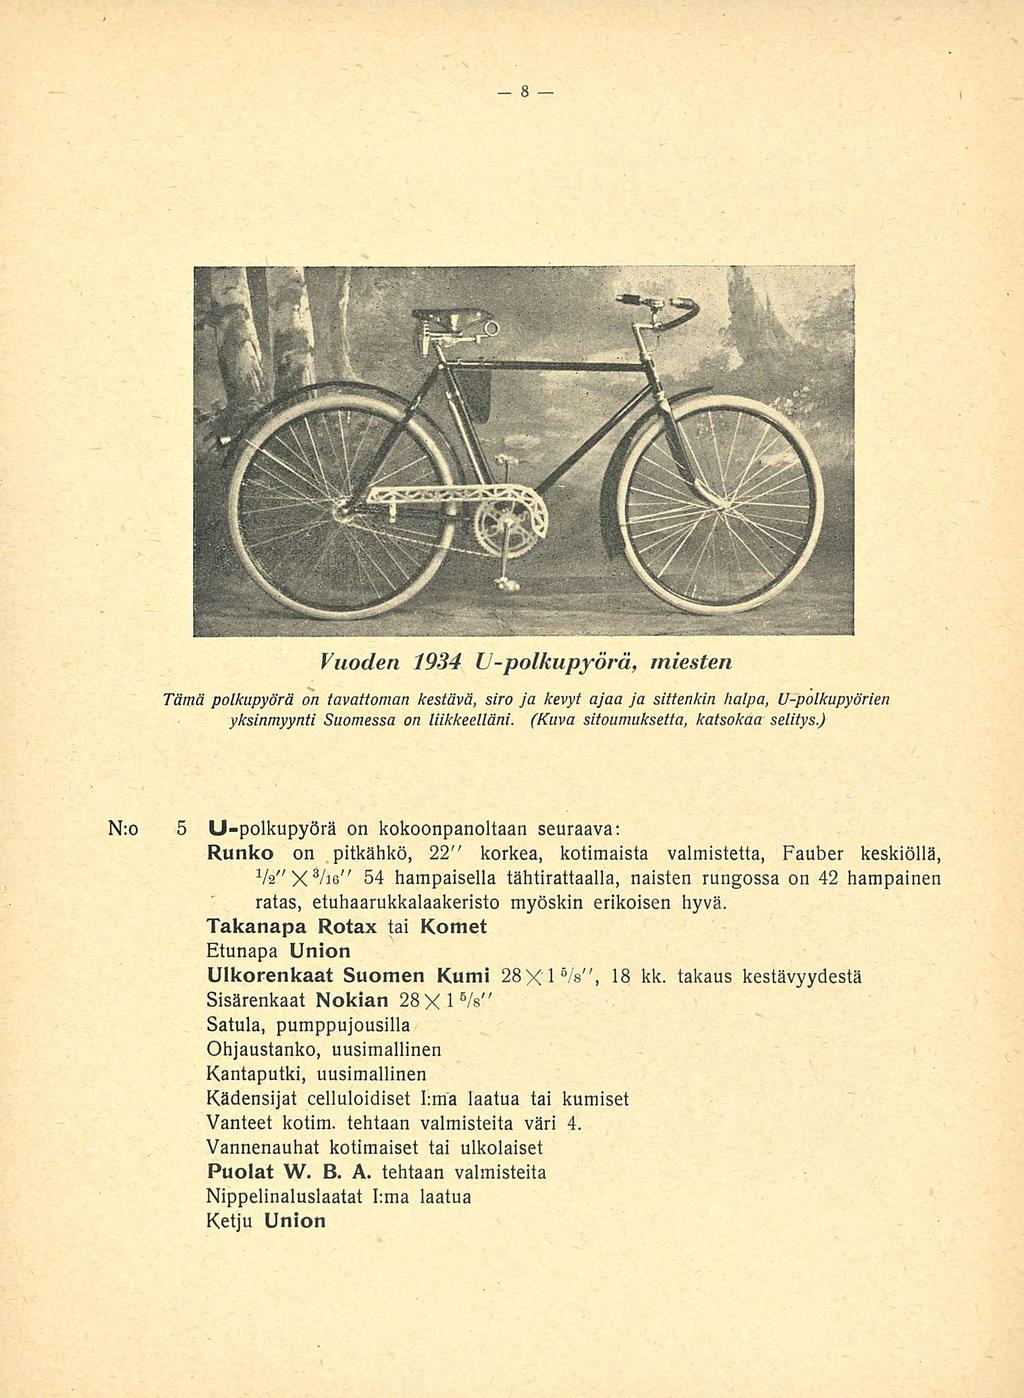 Vuoden 1934 LI-polkupyörä, miesten Tämä polkupyörä on tavattoman kestävä, siro ja kevyt ajaa ja sittenkin halpa, U-polkupyörien yksinmyynti Suomessa on liikkeelläni.